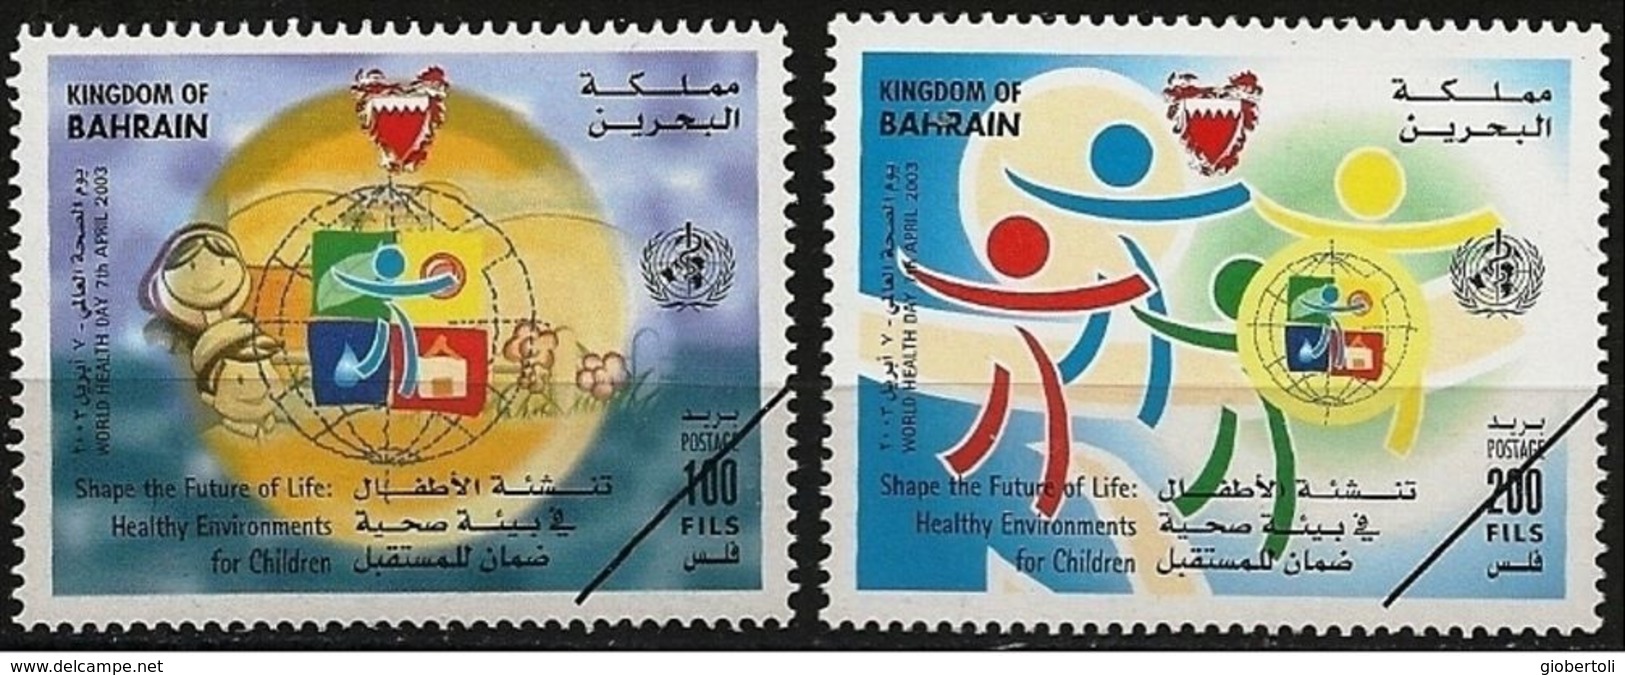 Bahrain: Specimen, Ambiente Sano Per I Bambini, Healthy Environment For Children, Environnement Sain Pour Les Enfants - Pollution